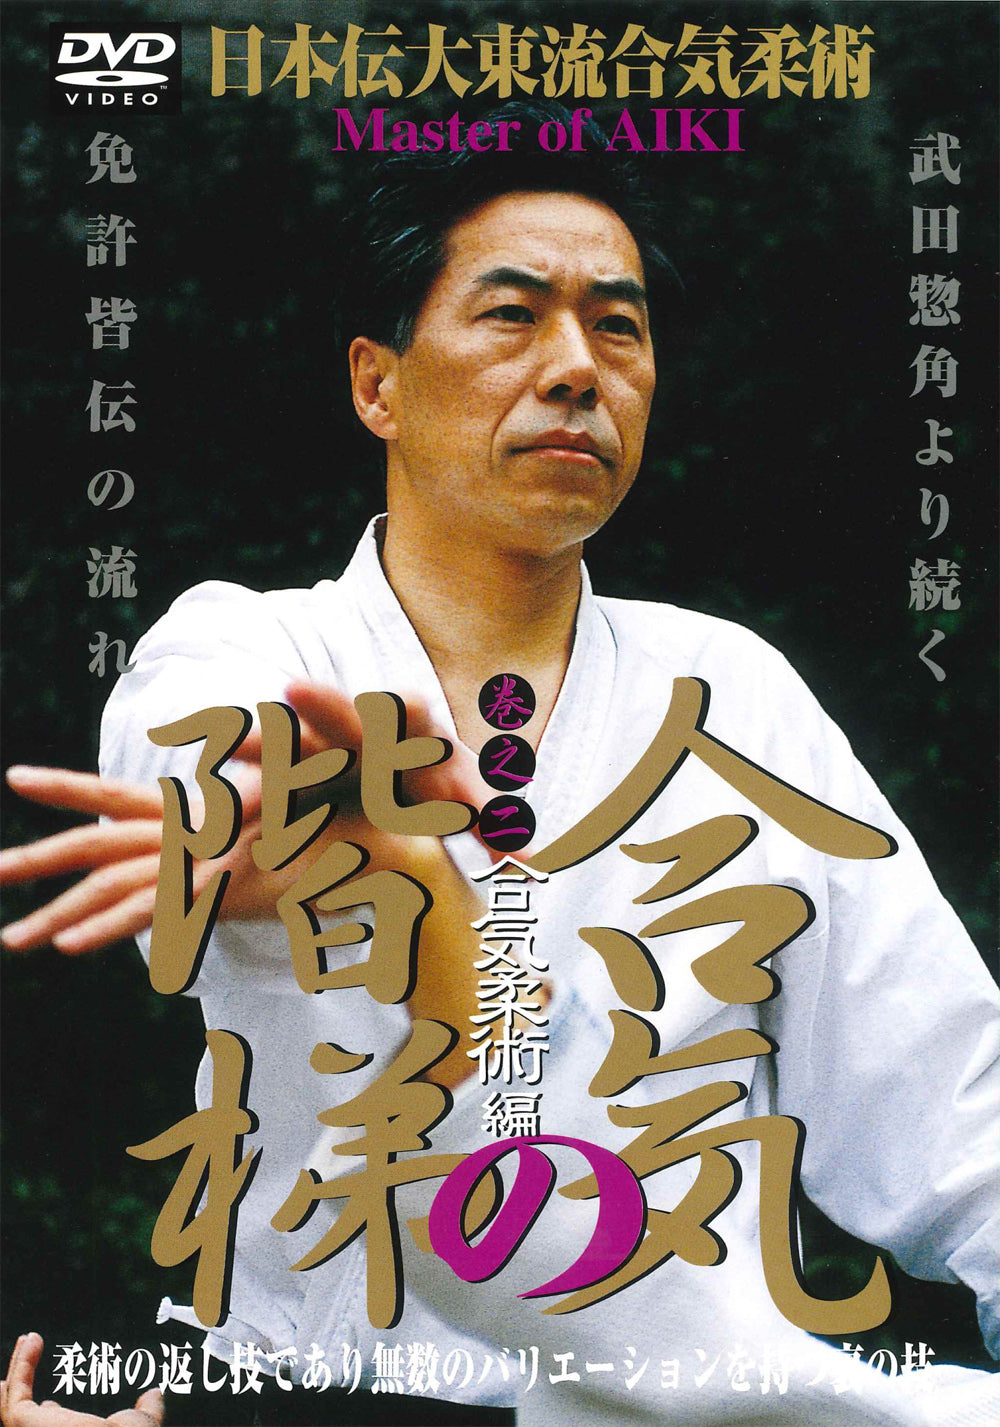 Master of Aiki DVD 2 by Kogen Sugasawa